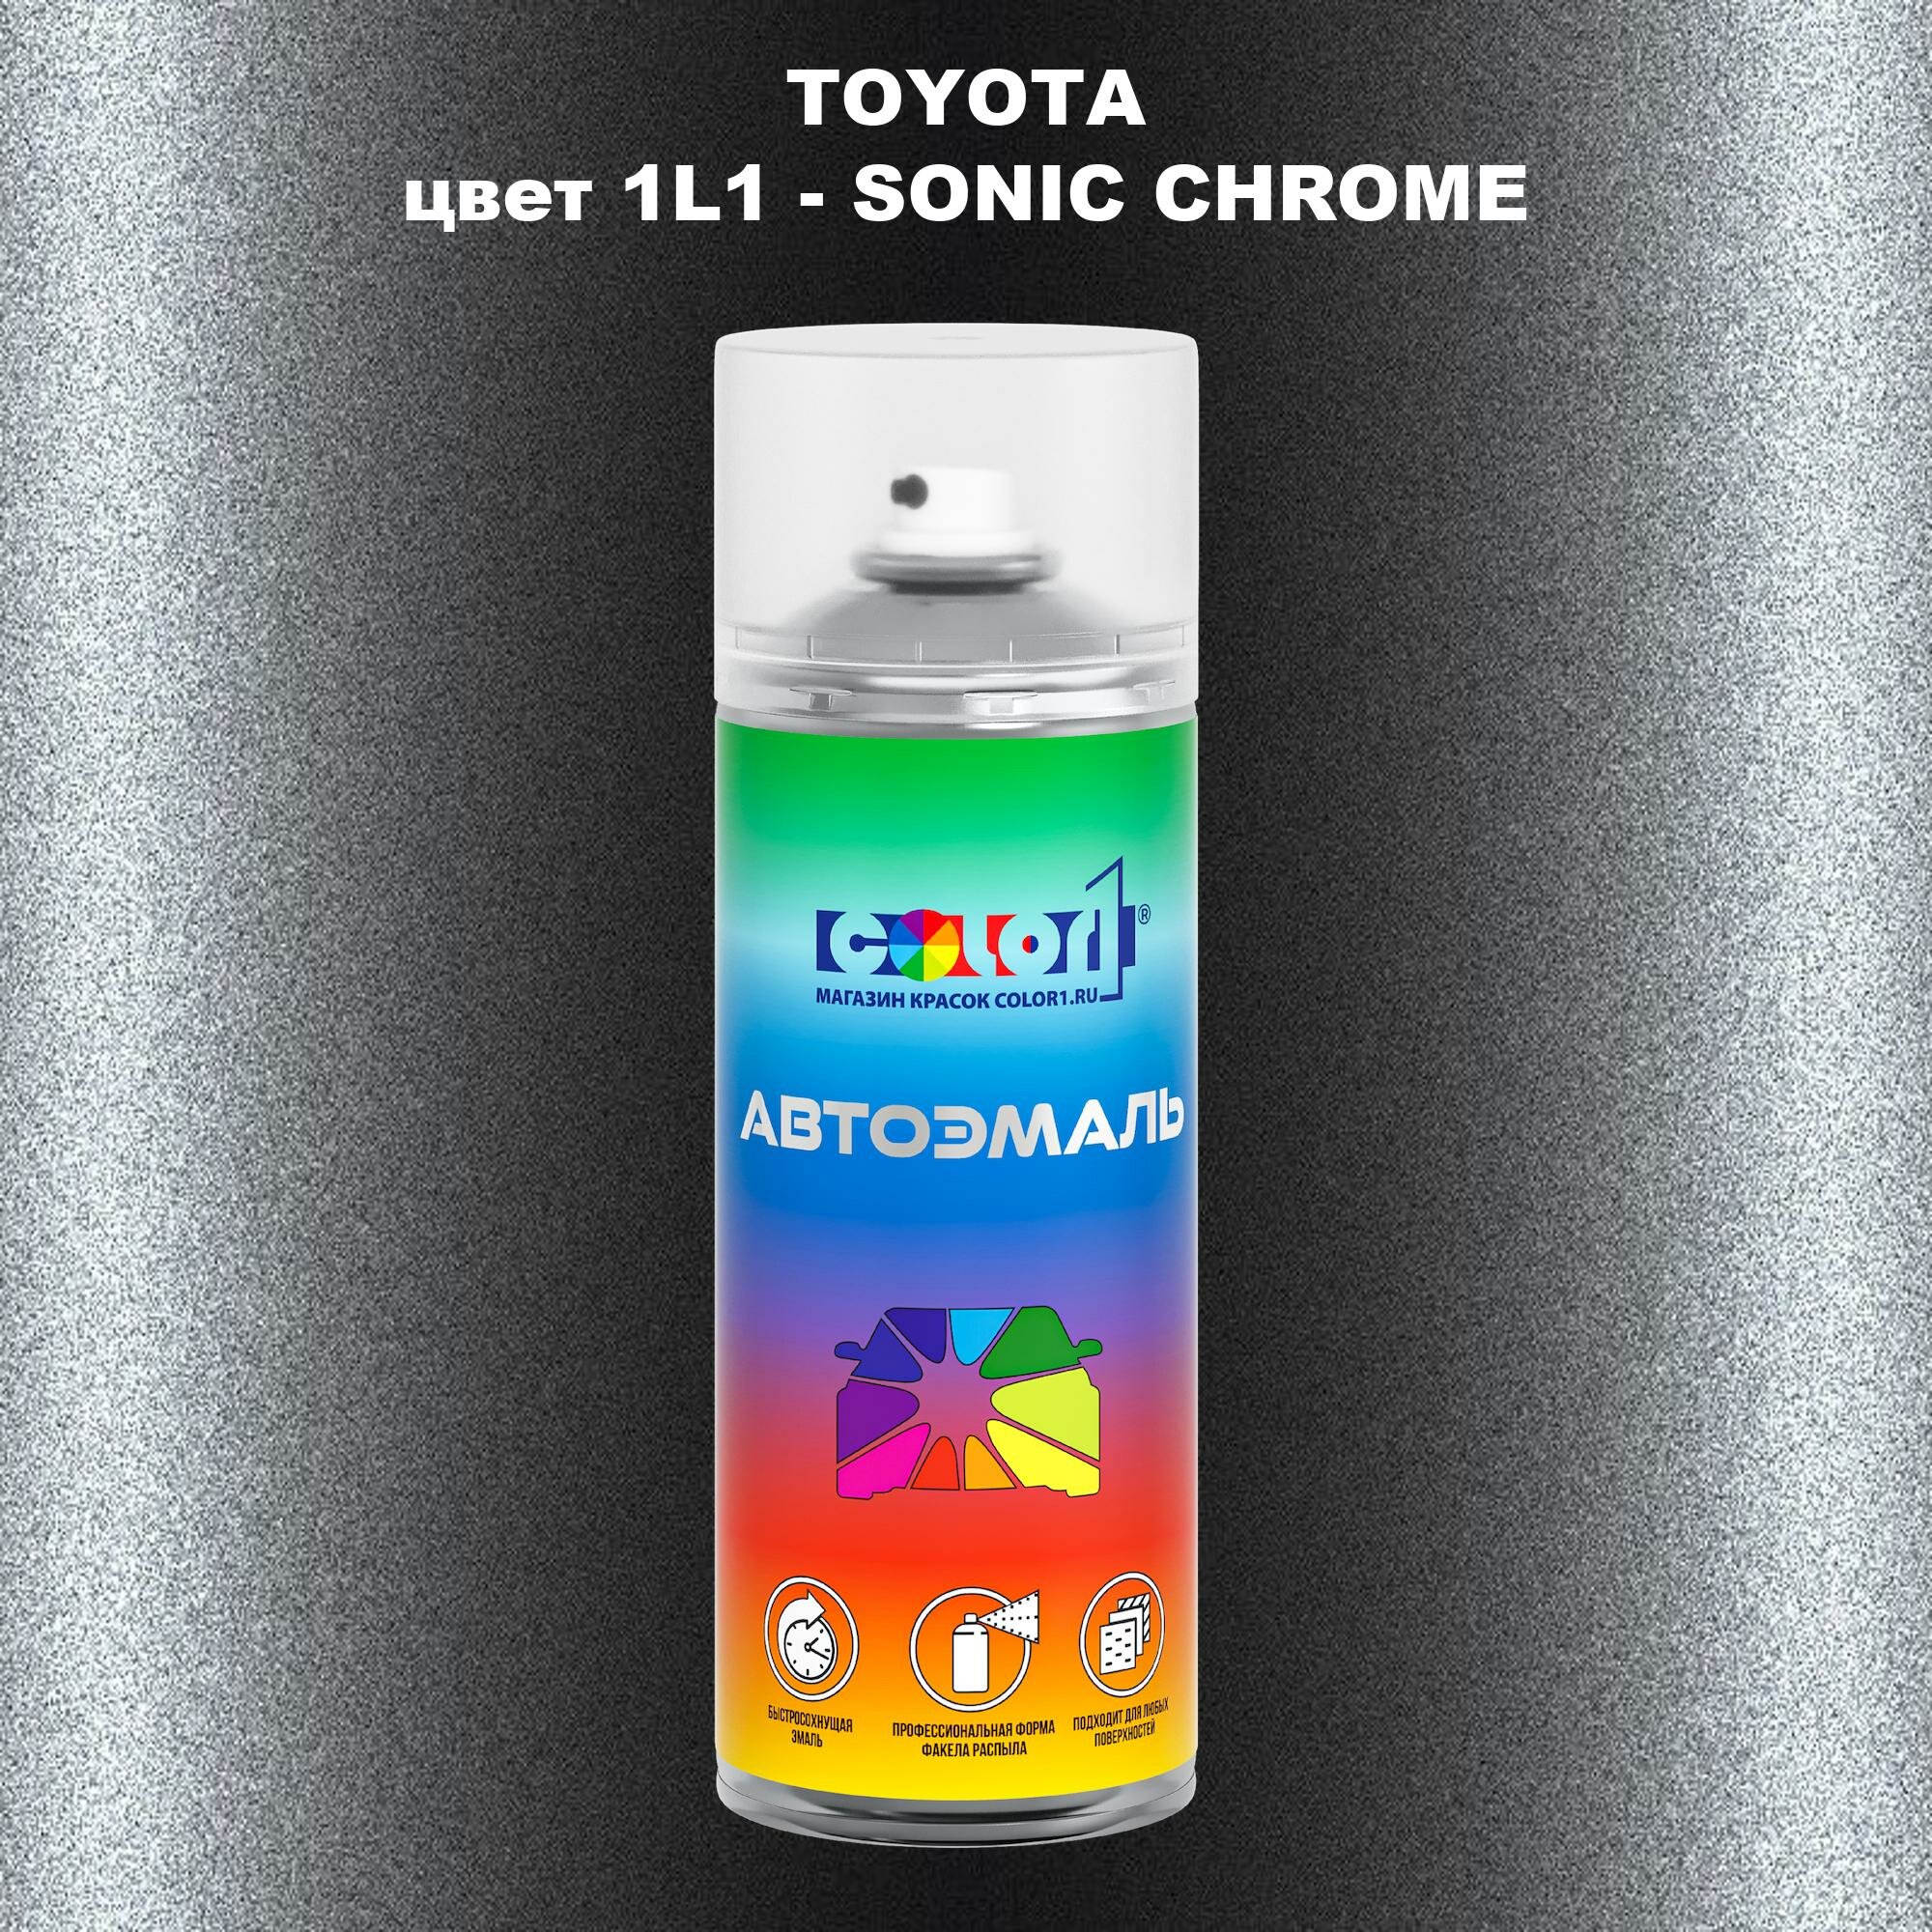 Аэрозольная краска COLOR1 для TOYOTA, цвет 1L1 - SONIC CHROME